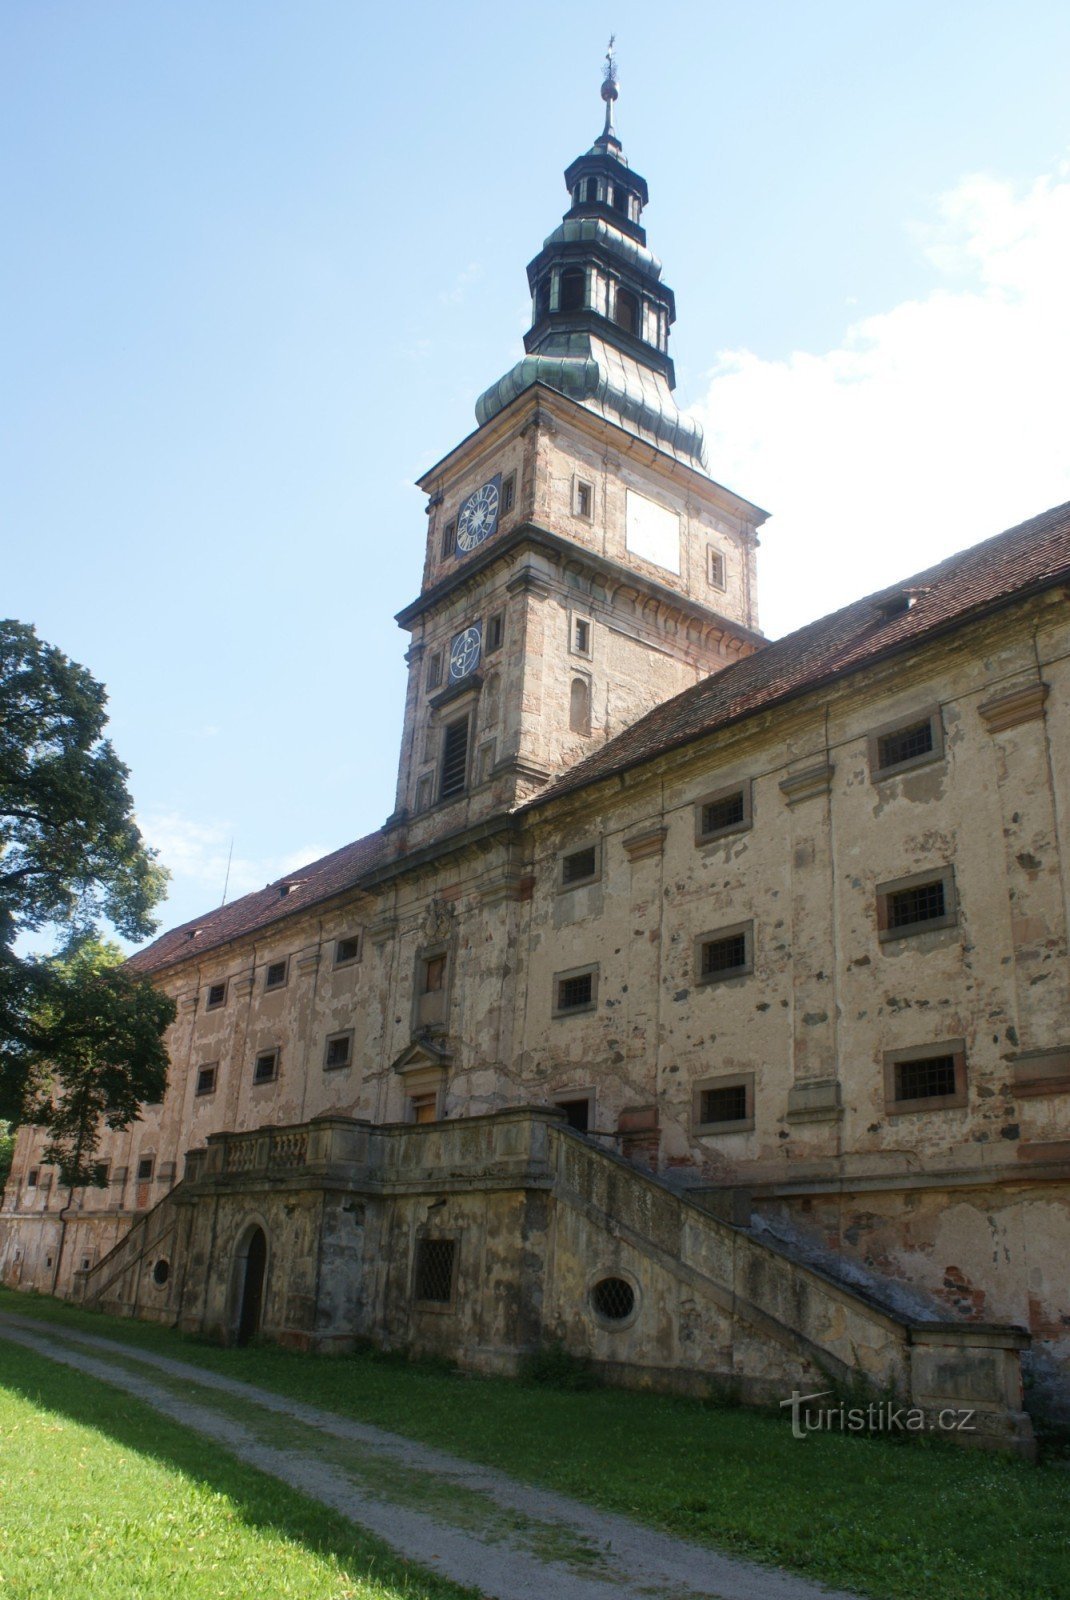 Plasy kolostor – barokk magtár kápolnával és óratoronnyal